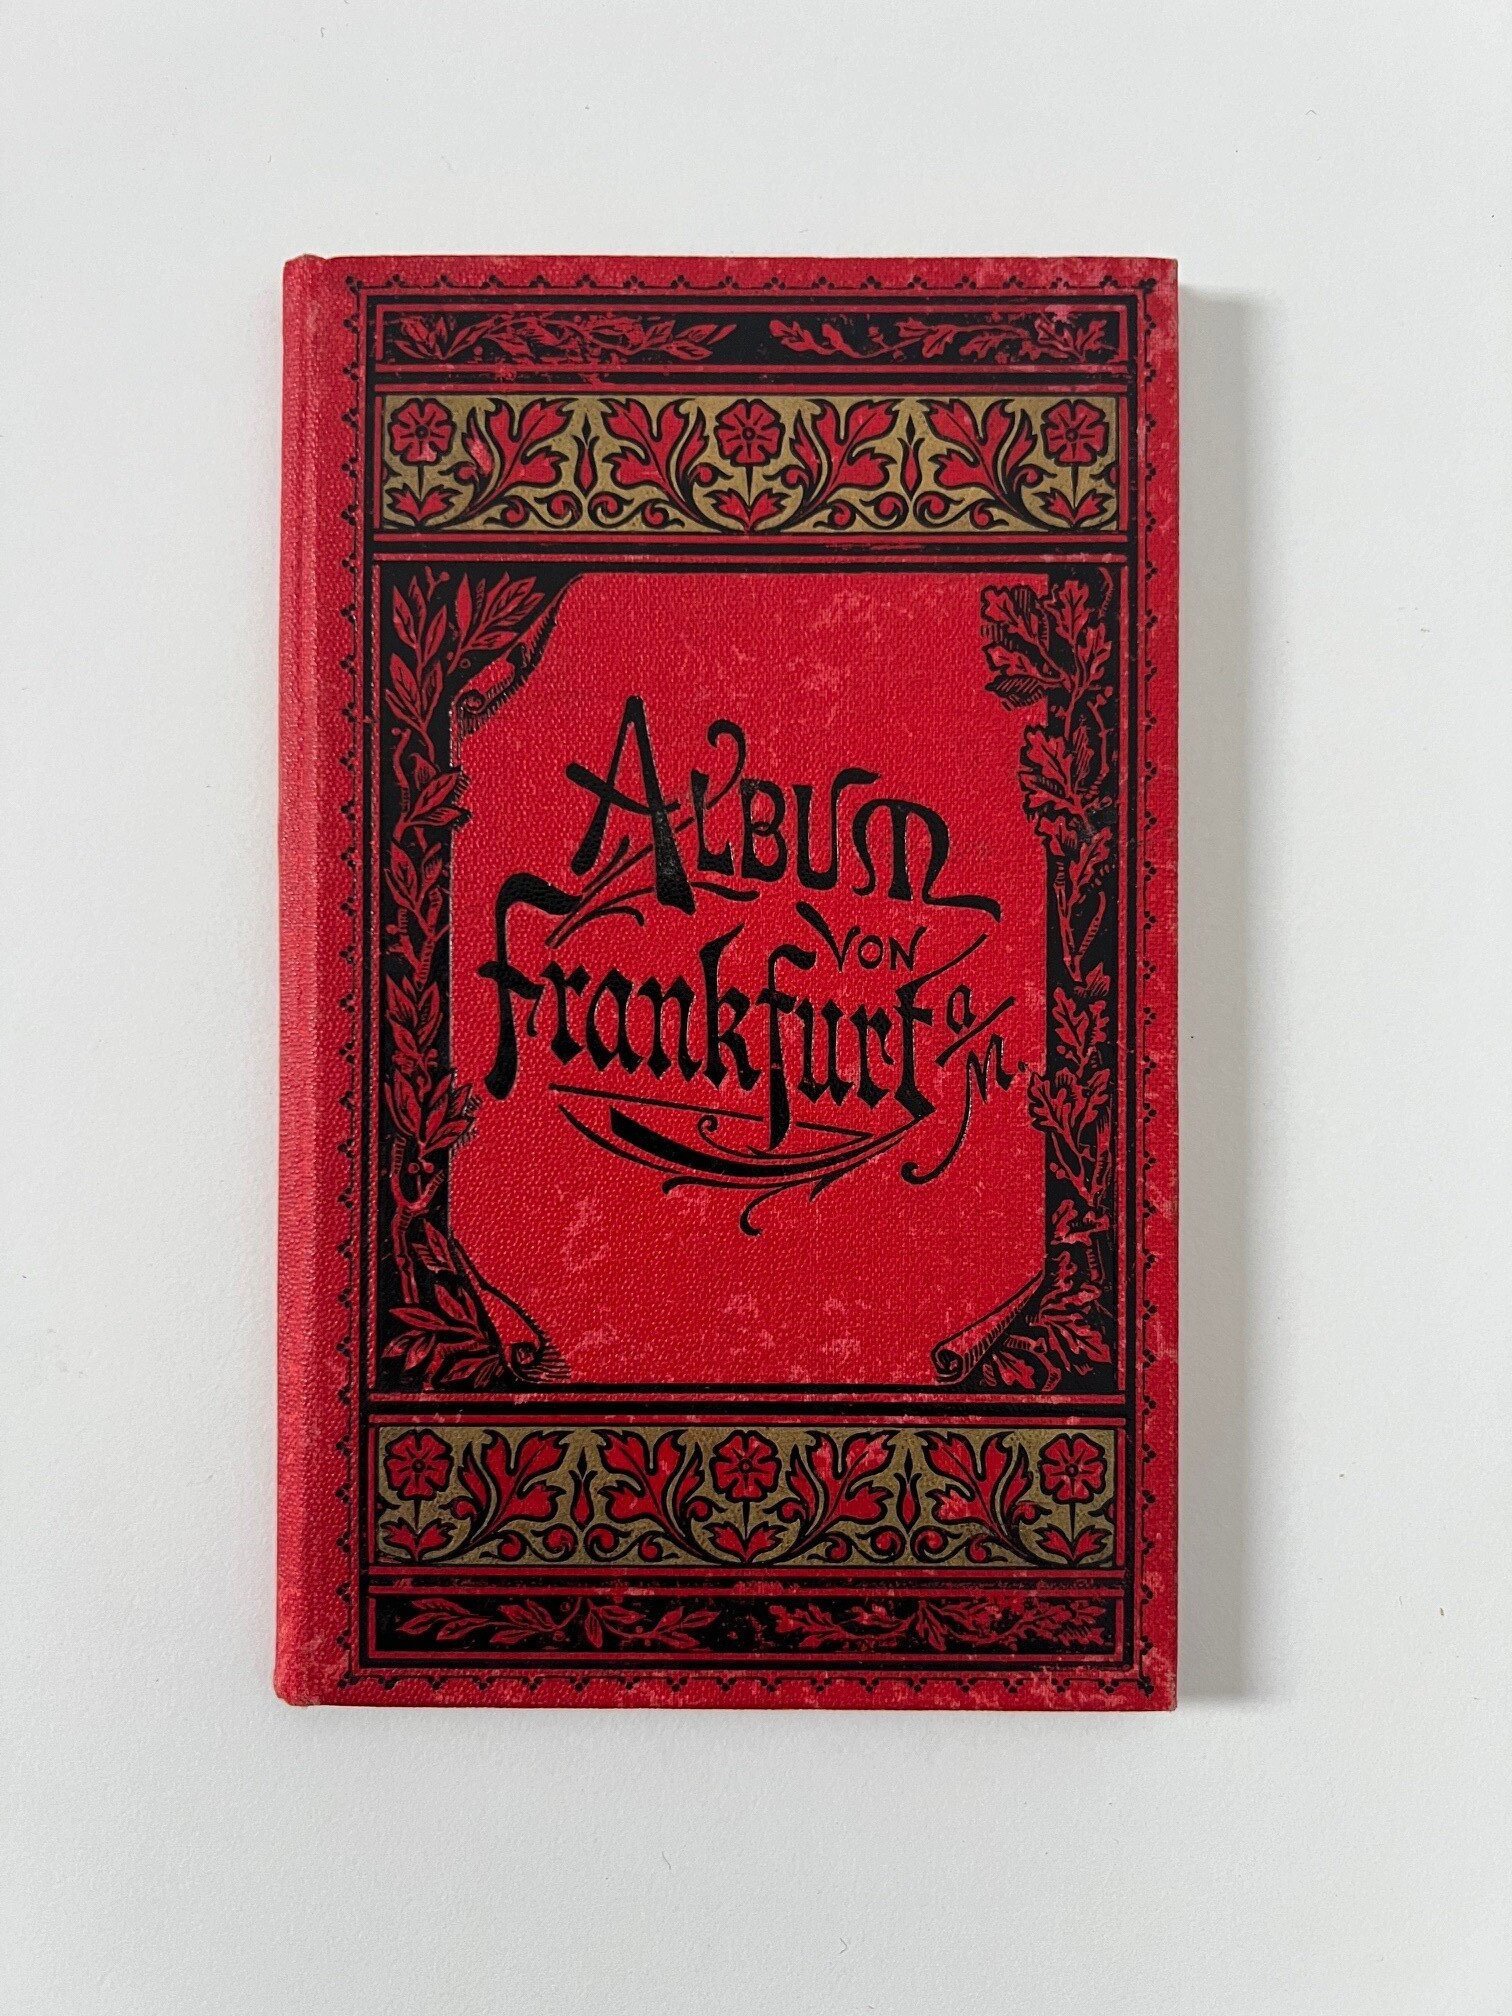 Unbekannter Hersteller, Album von Frankfurt a. M., 33 Lithographien als Leporello, ca. 1887. (Taunus-Rhein-Main - Regionalgeschichtliche Sammlung Dr. Stefan Naas CC BY-NC-SA)